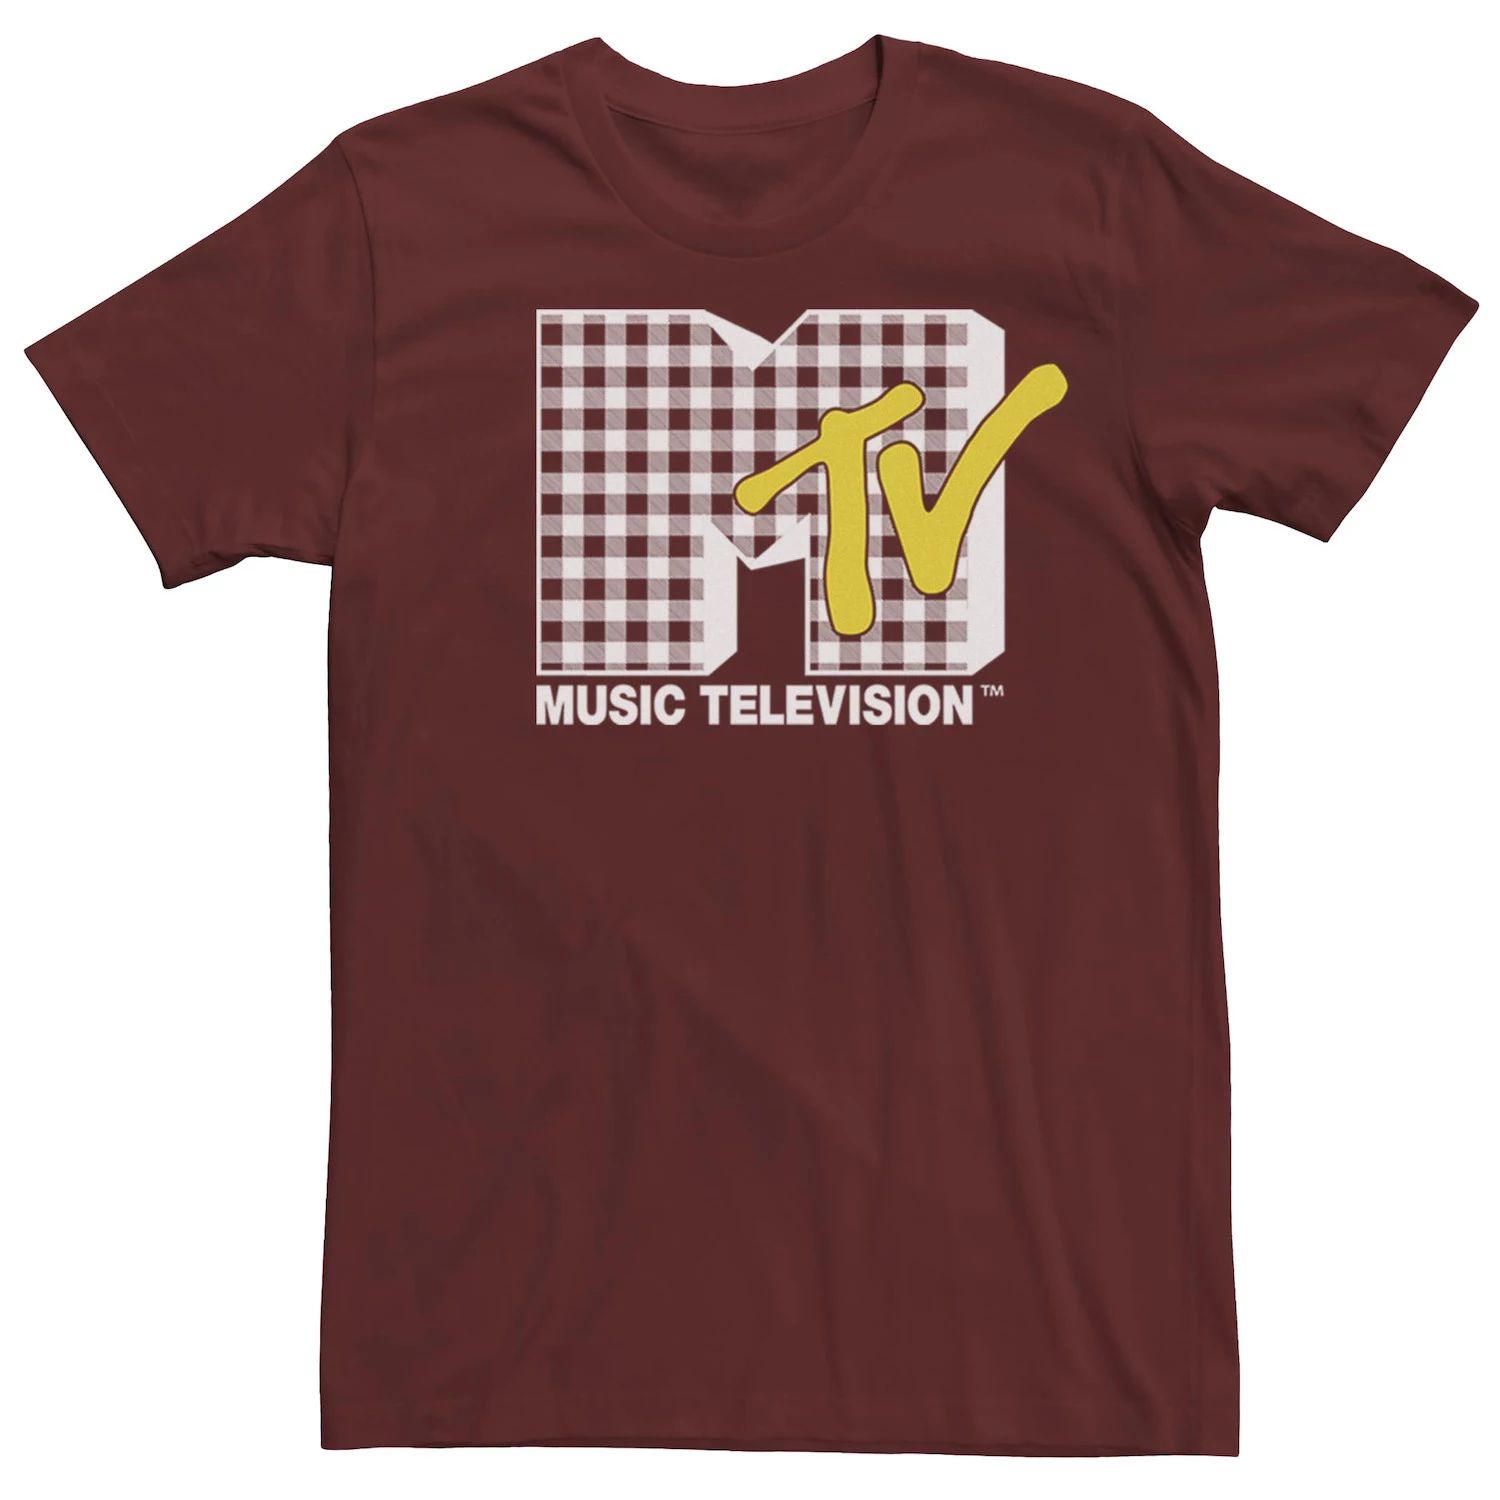 Мужская футболка с логотипом MTV в клетчатом стиле Licensed Character